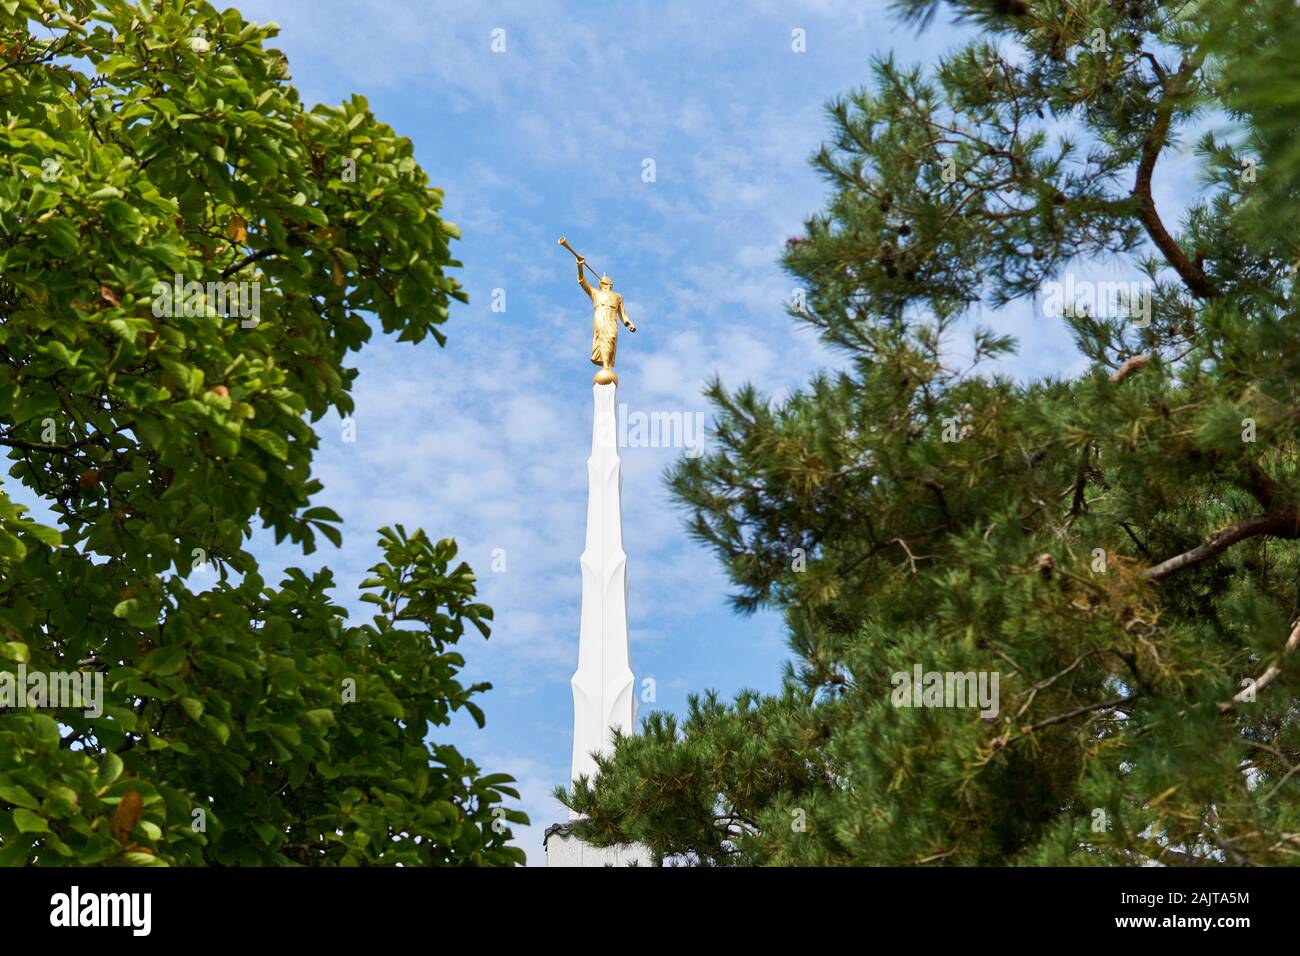 Il Golden Angel Moroni statua sorge sulla sommità di una guglia di bianco si trova a Seul Corea tempio della Chiesa di Gesù Cristo dei Santi degli Ultimi Giorni. Foto Stock